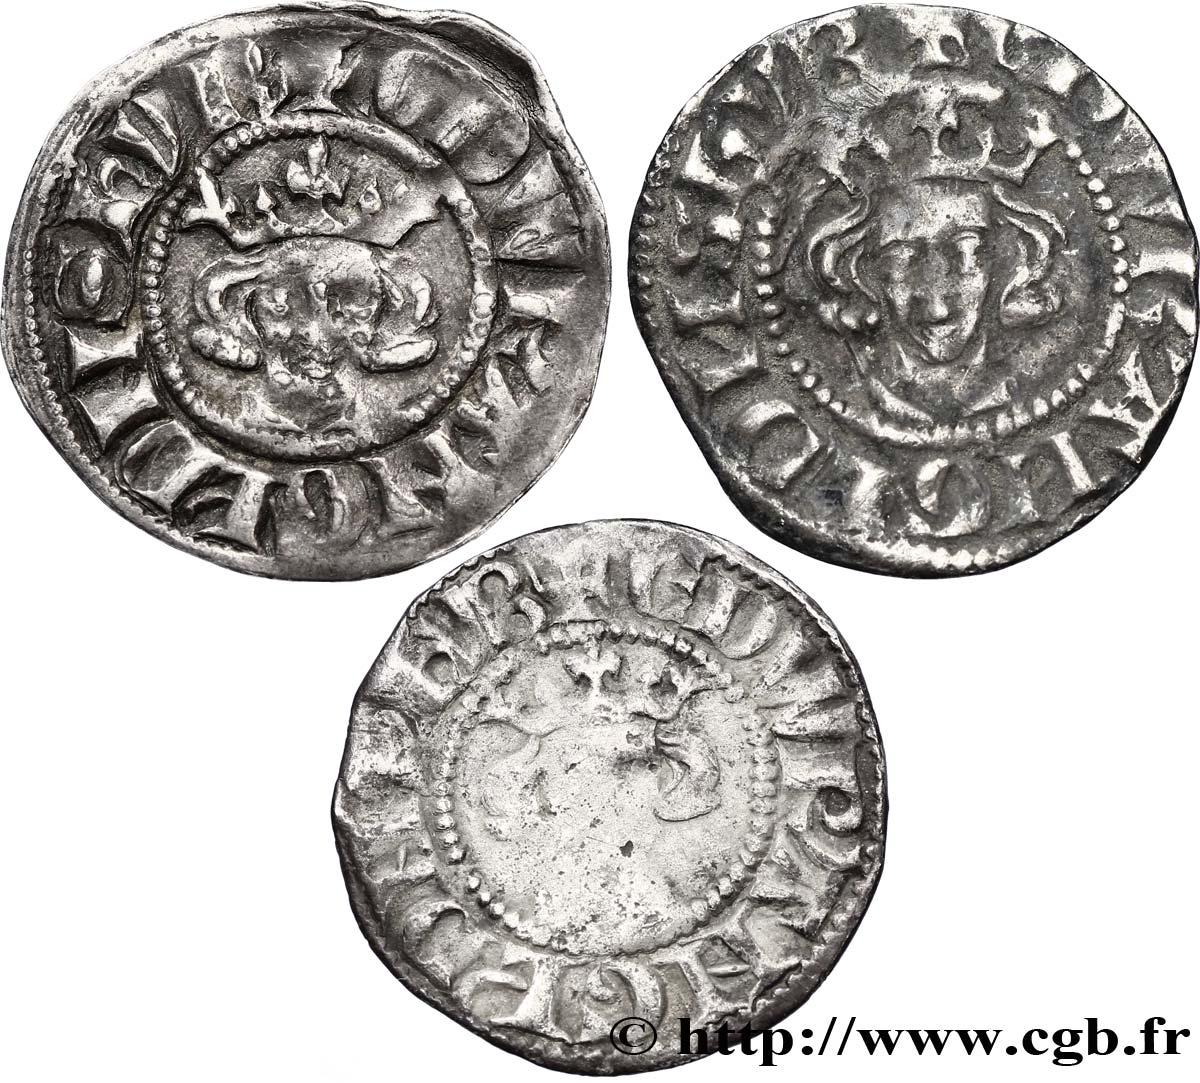 LOTES Trois pennies au nom d’Edouard n.d. s.l. BC